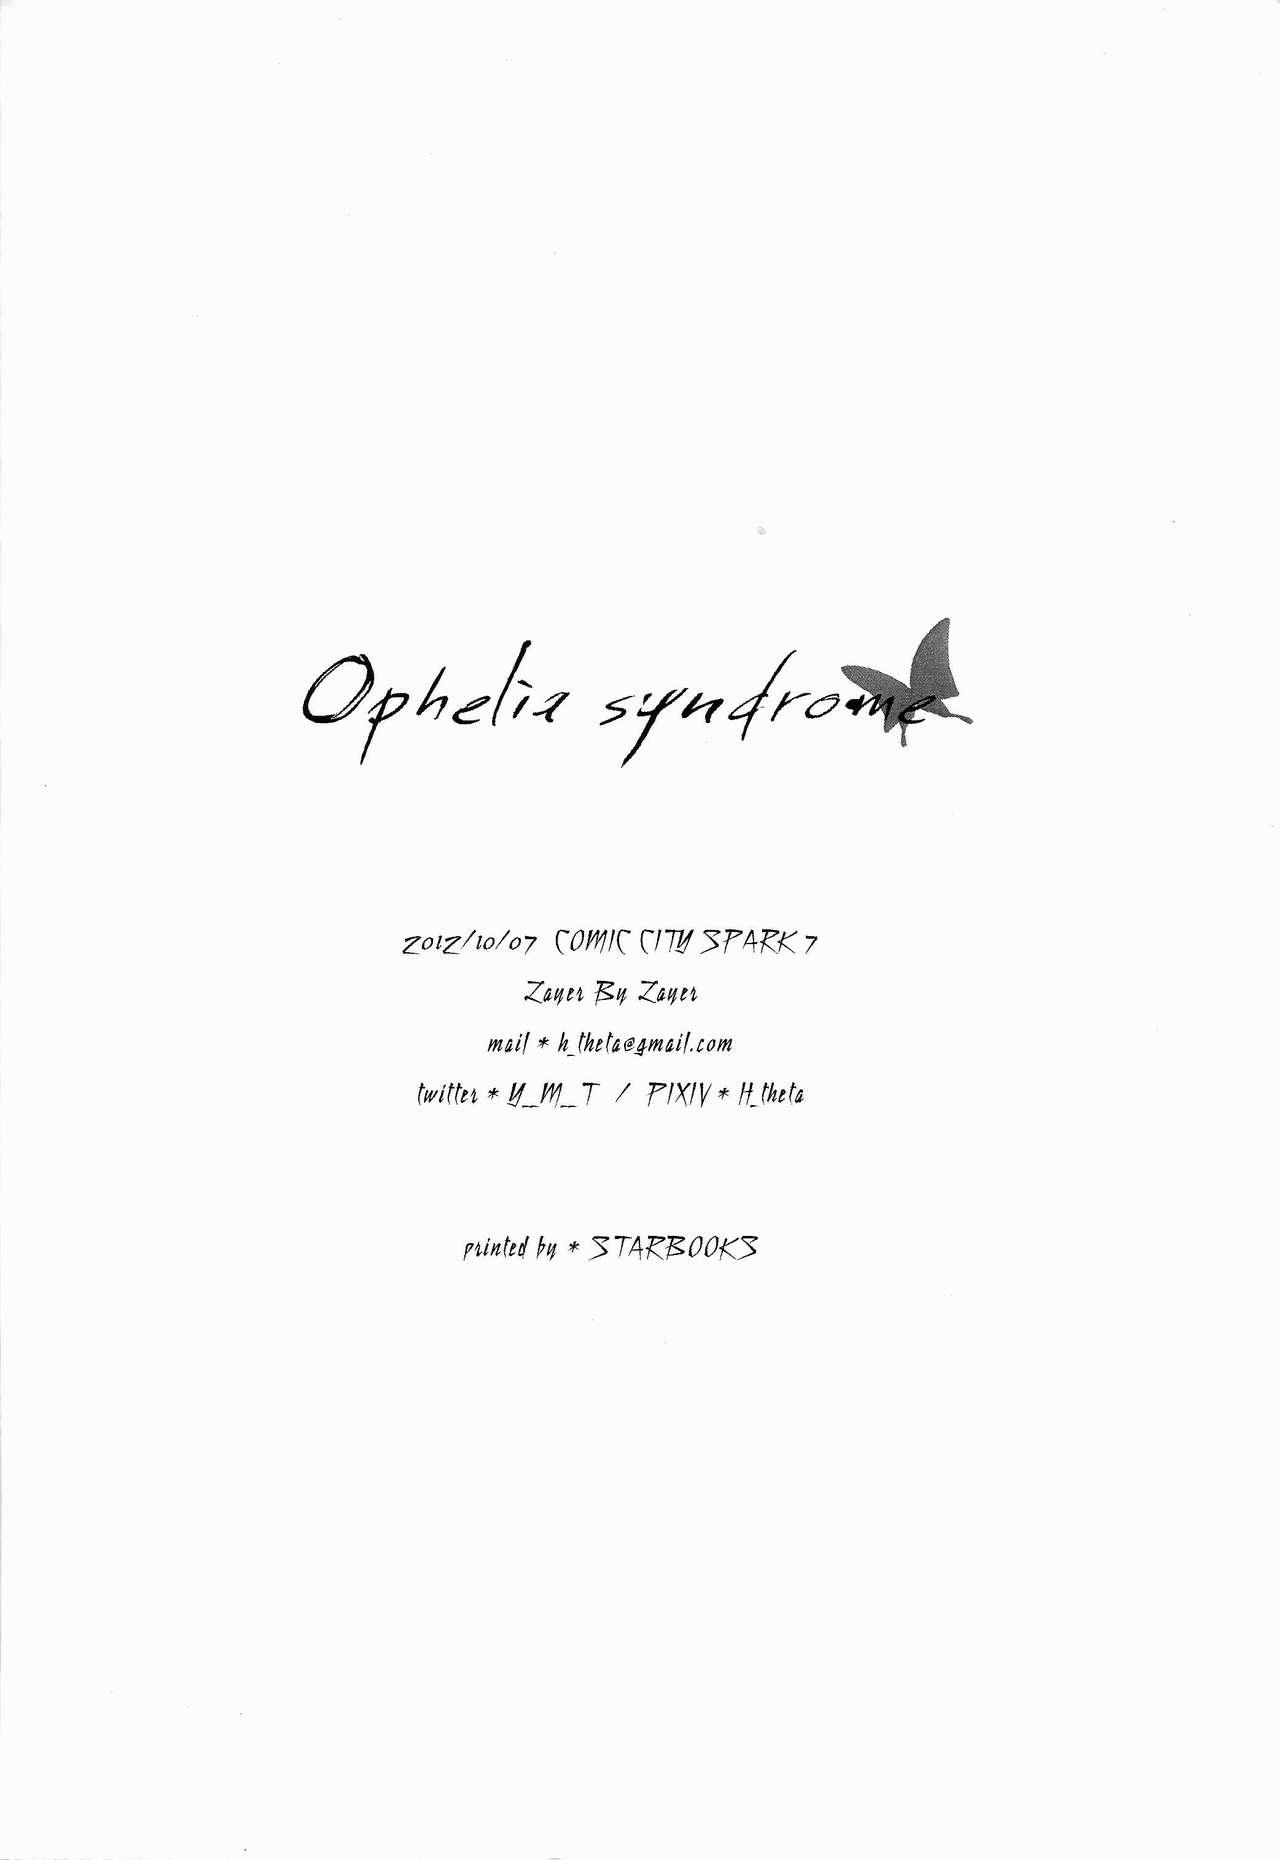 Ophelia syndrome 40